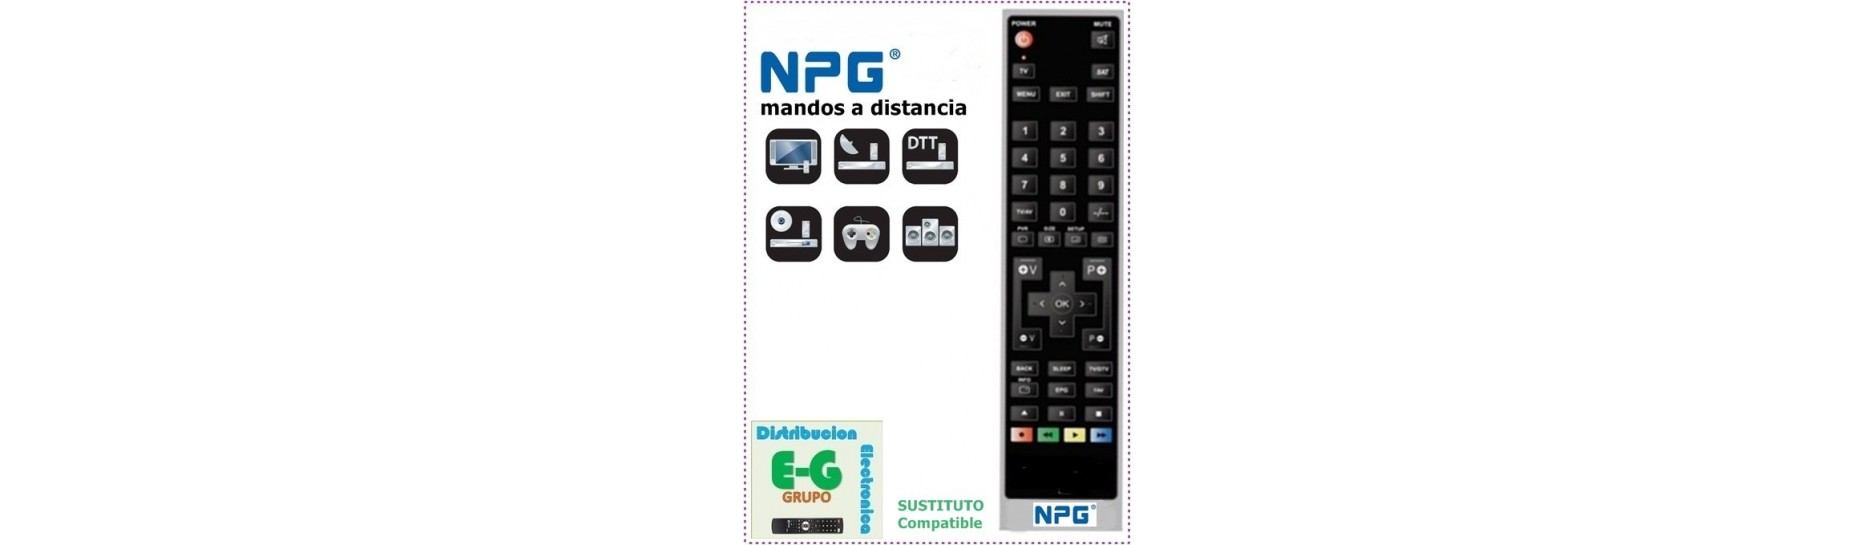 Mando para Televisión NPG | Comprar Mando para Televisión NPG